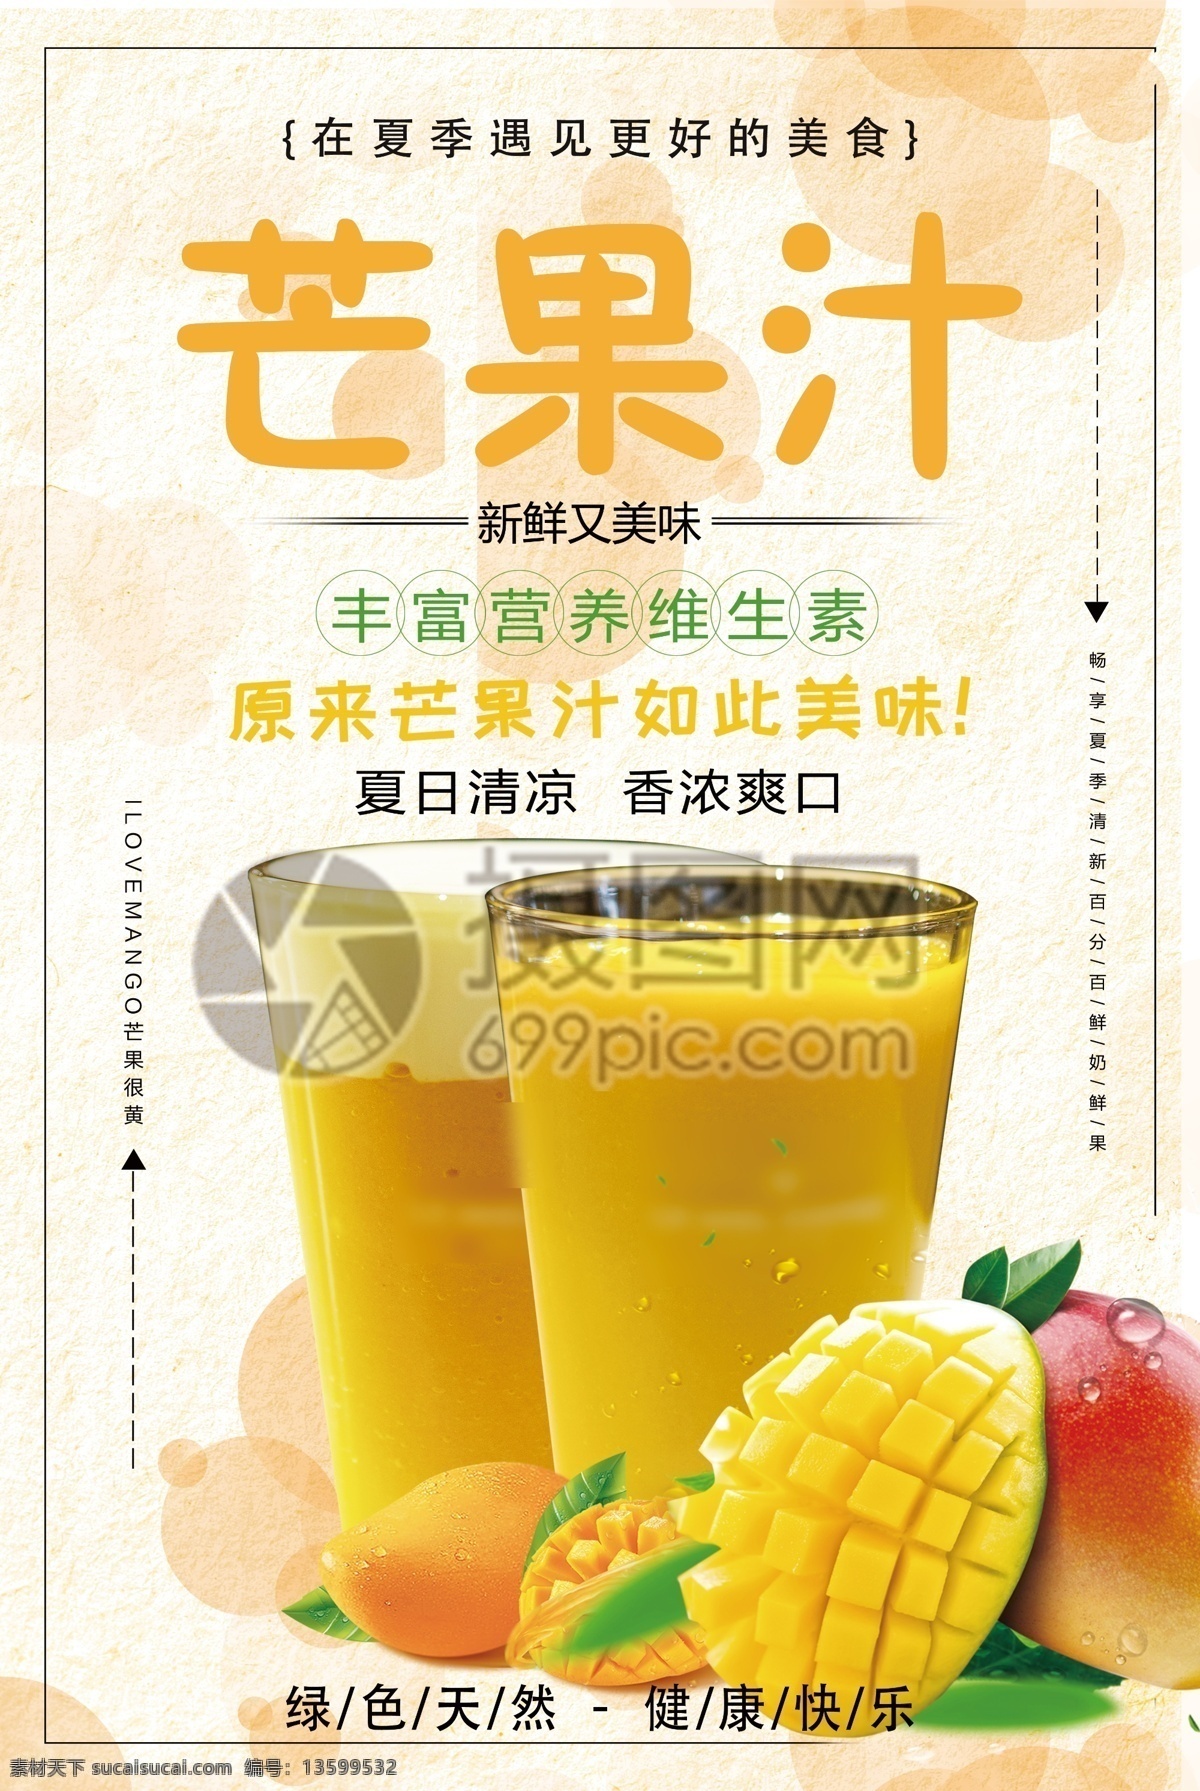 芒果汁 促销 海报 促销海报 水果汁 果汁 夏季特饮 鲜榨果汁 饮品